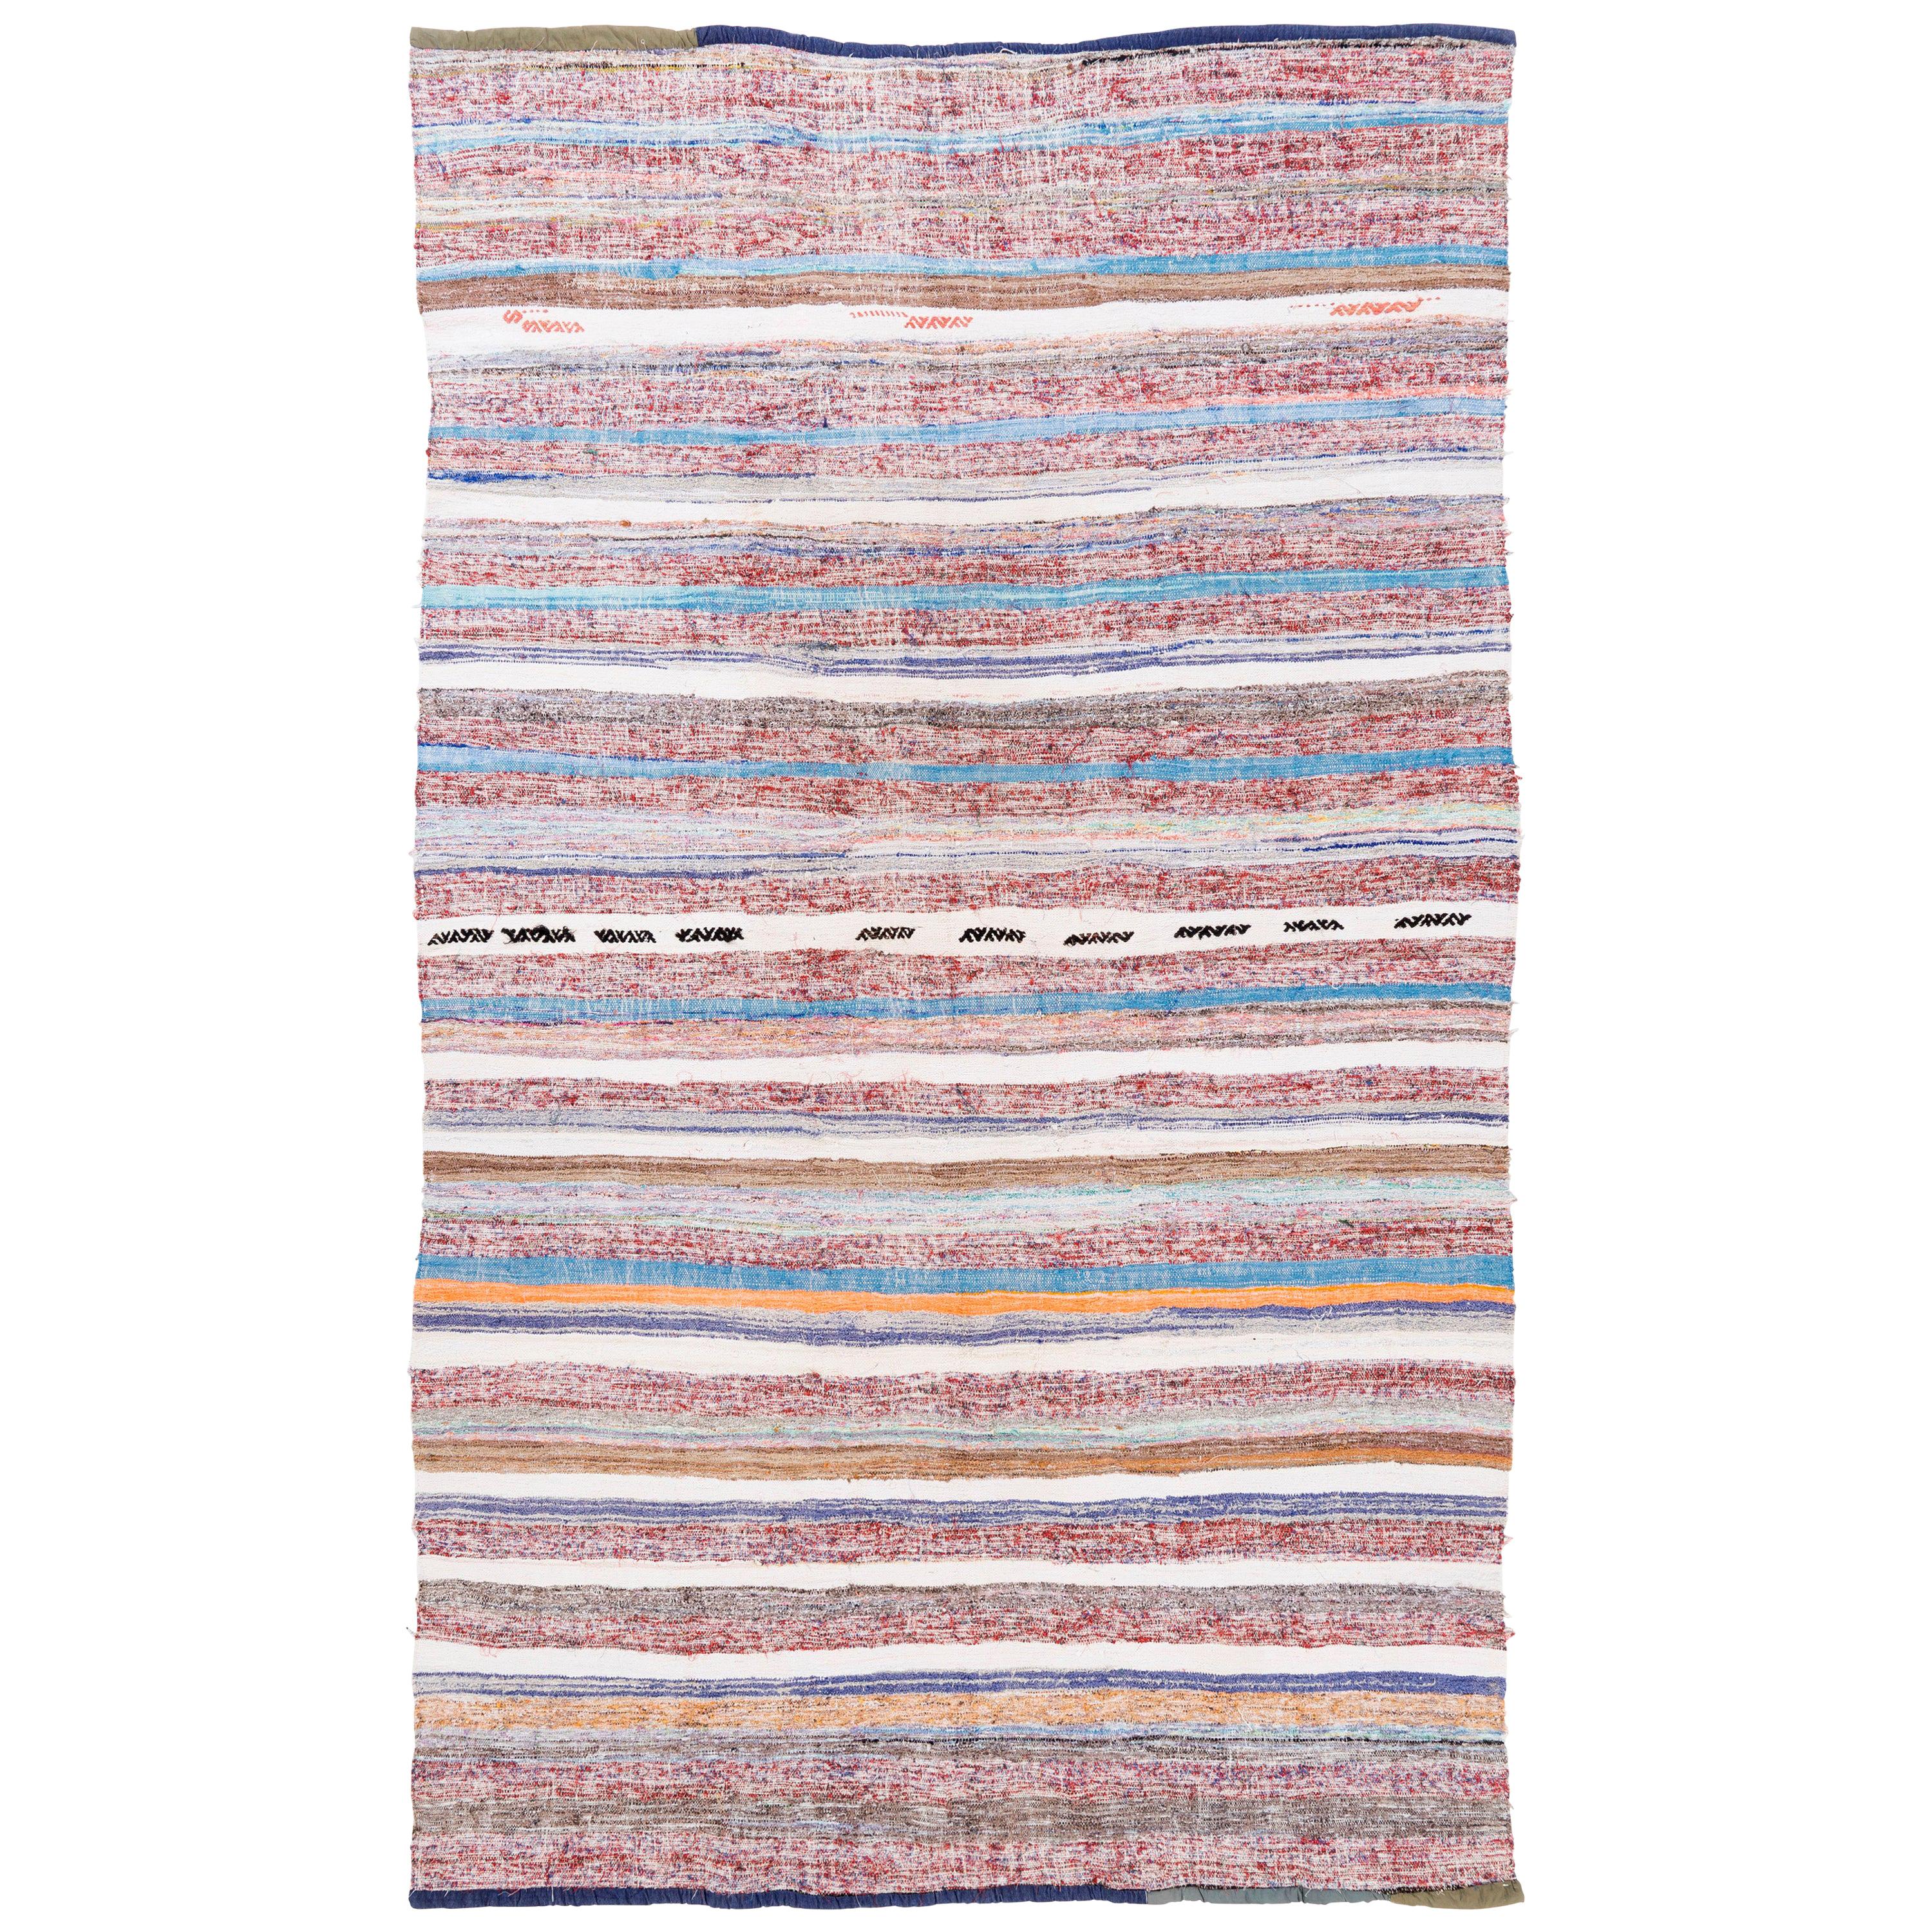 6.6x11 Ft Handgewebter, gebänderter Kelim-Teppich aus der Mitte des Jahrhunderts, flachgewebter Baumwollteppich